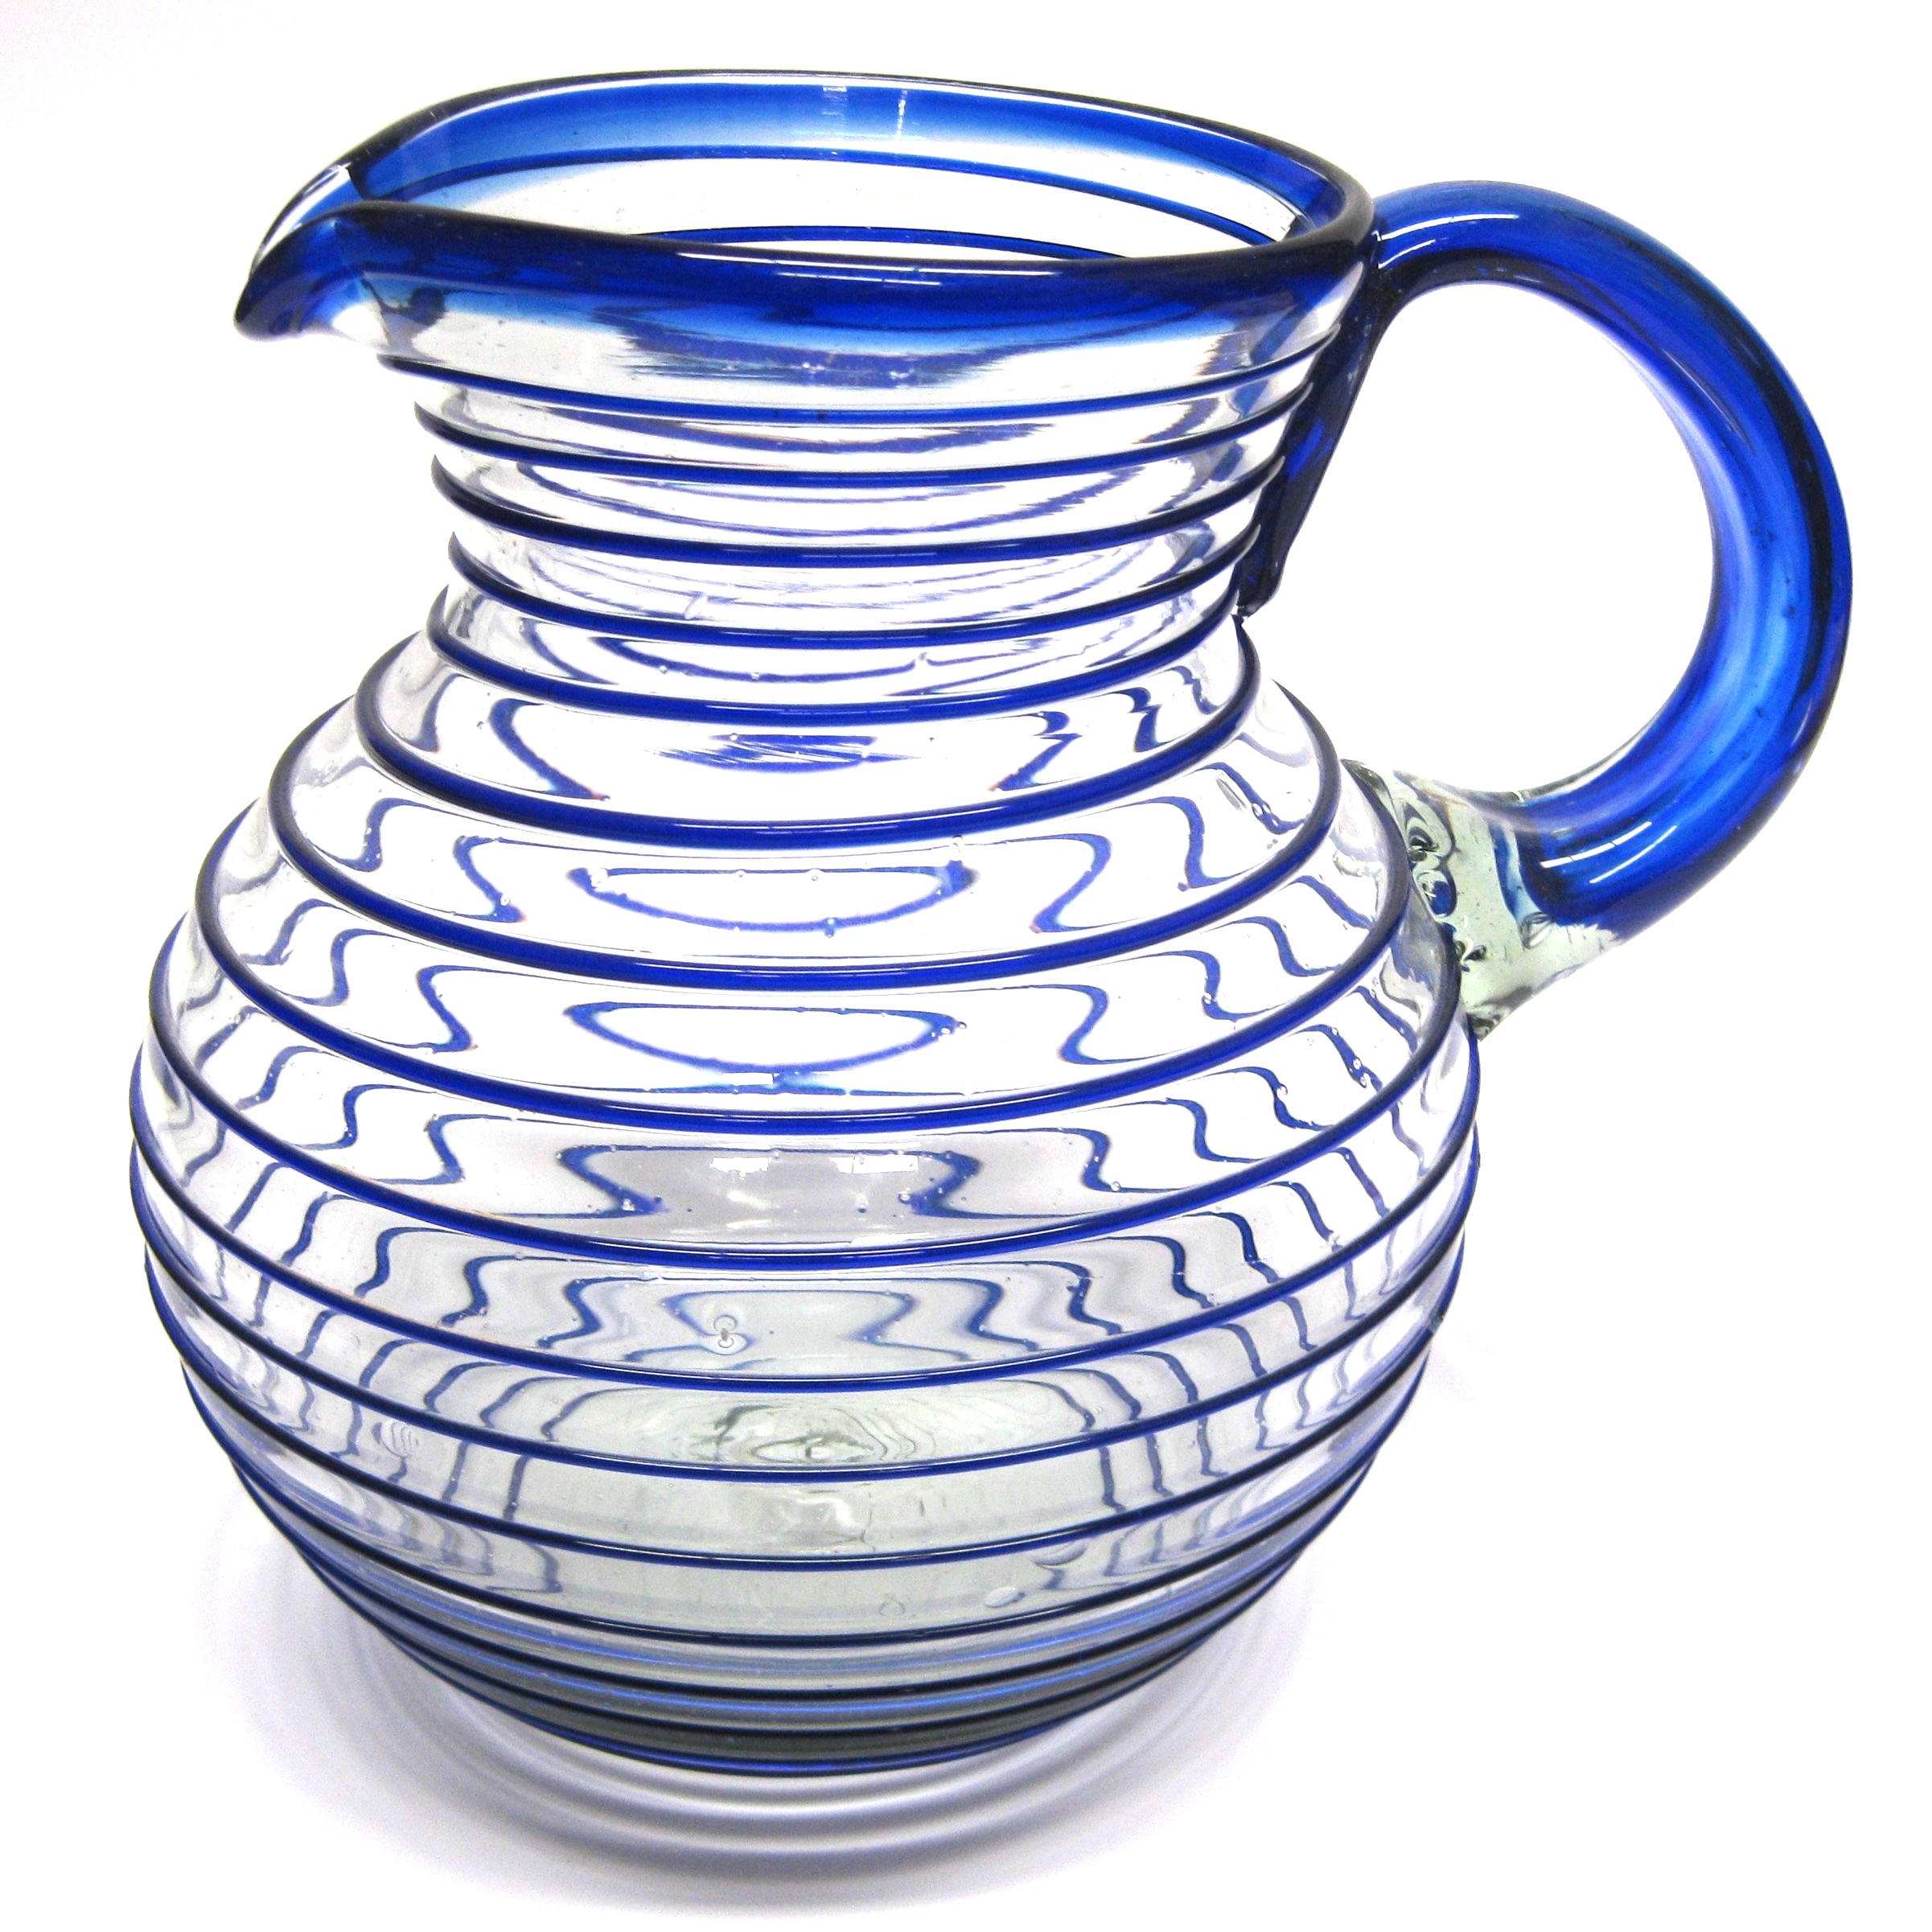 Ofertas / Jarra de vidrio soplado con espiral azul cobalto / Clásica con un toque moderno, ésta jarra está adornada con una preciosa espiral azul cobalto.